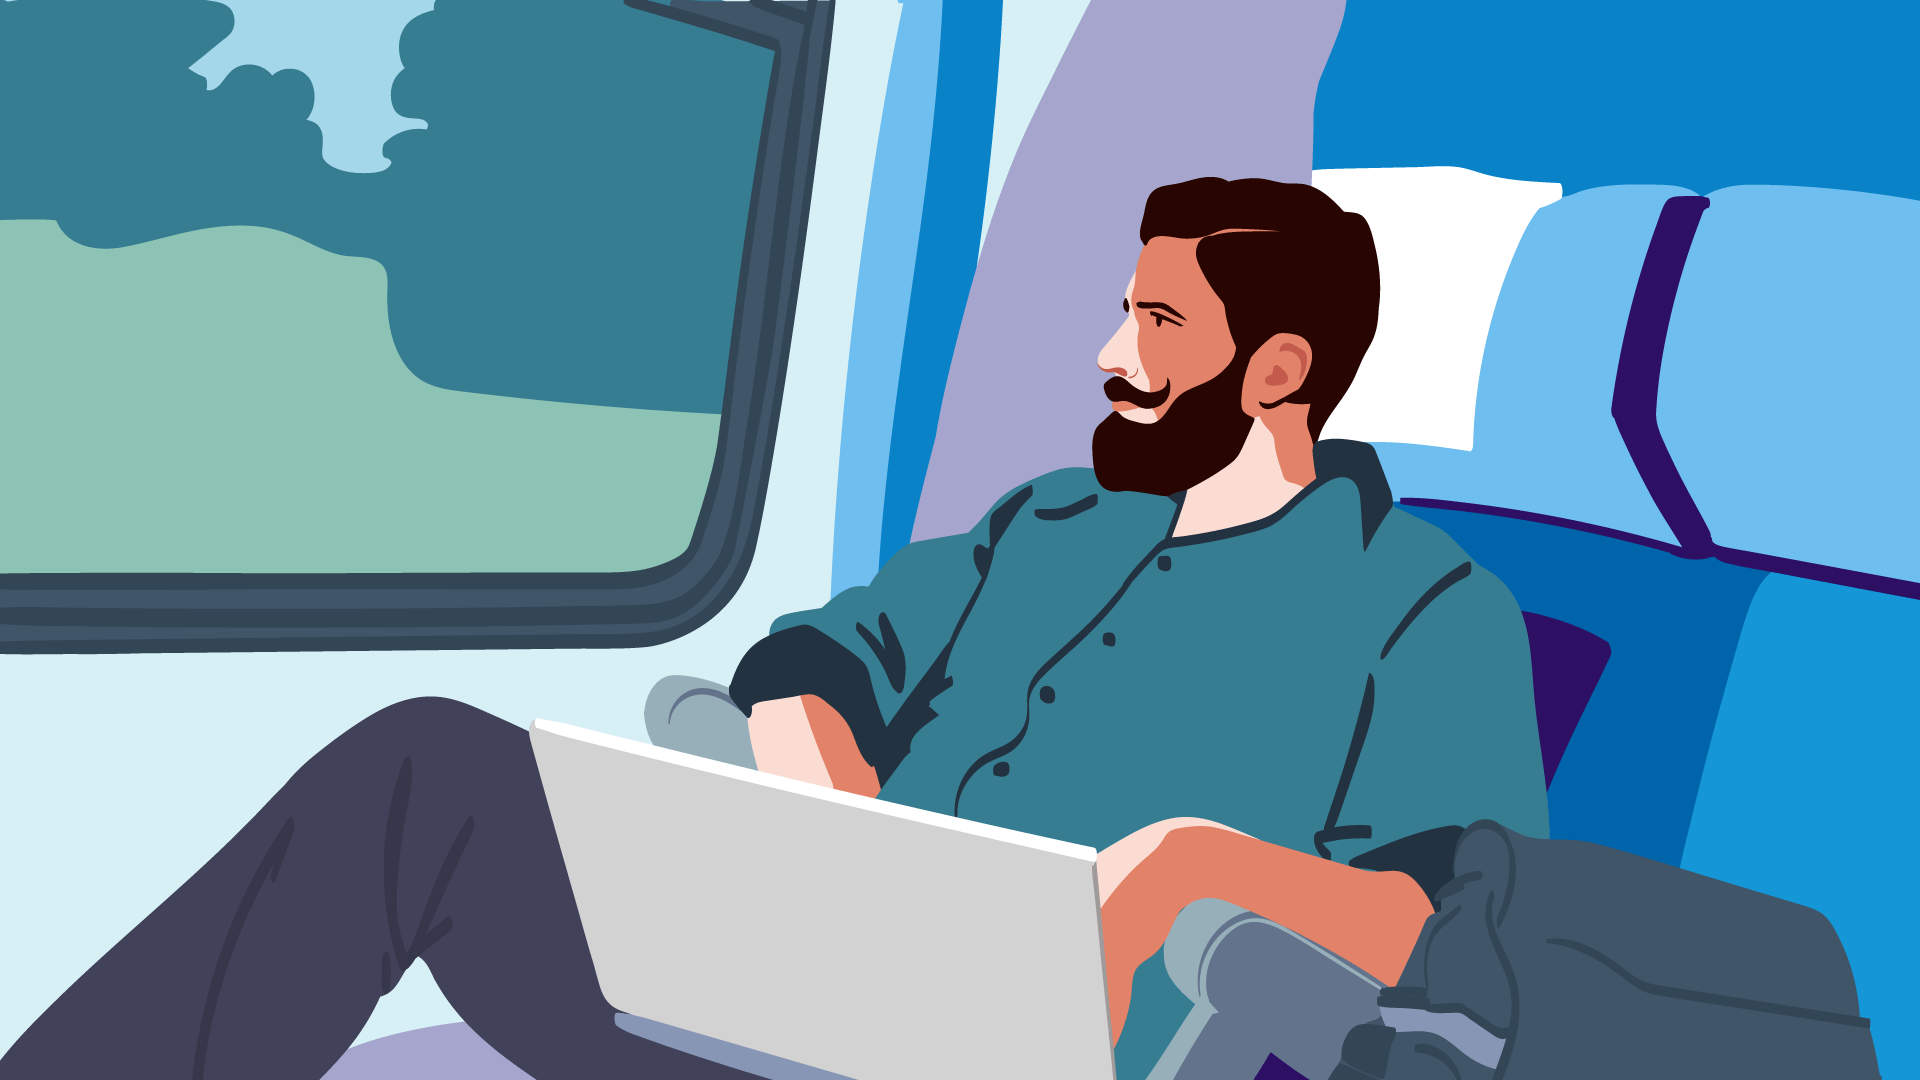 Mann mit grünem Hemd im Zug arbeitet am Laptop, um darzustellen, dass eine Reisekostenabrechnung als Freiberufler wichtig ist.